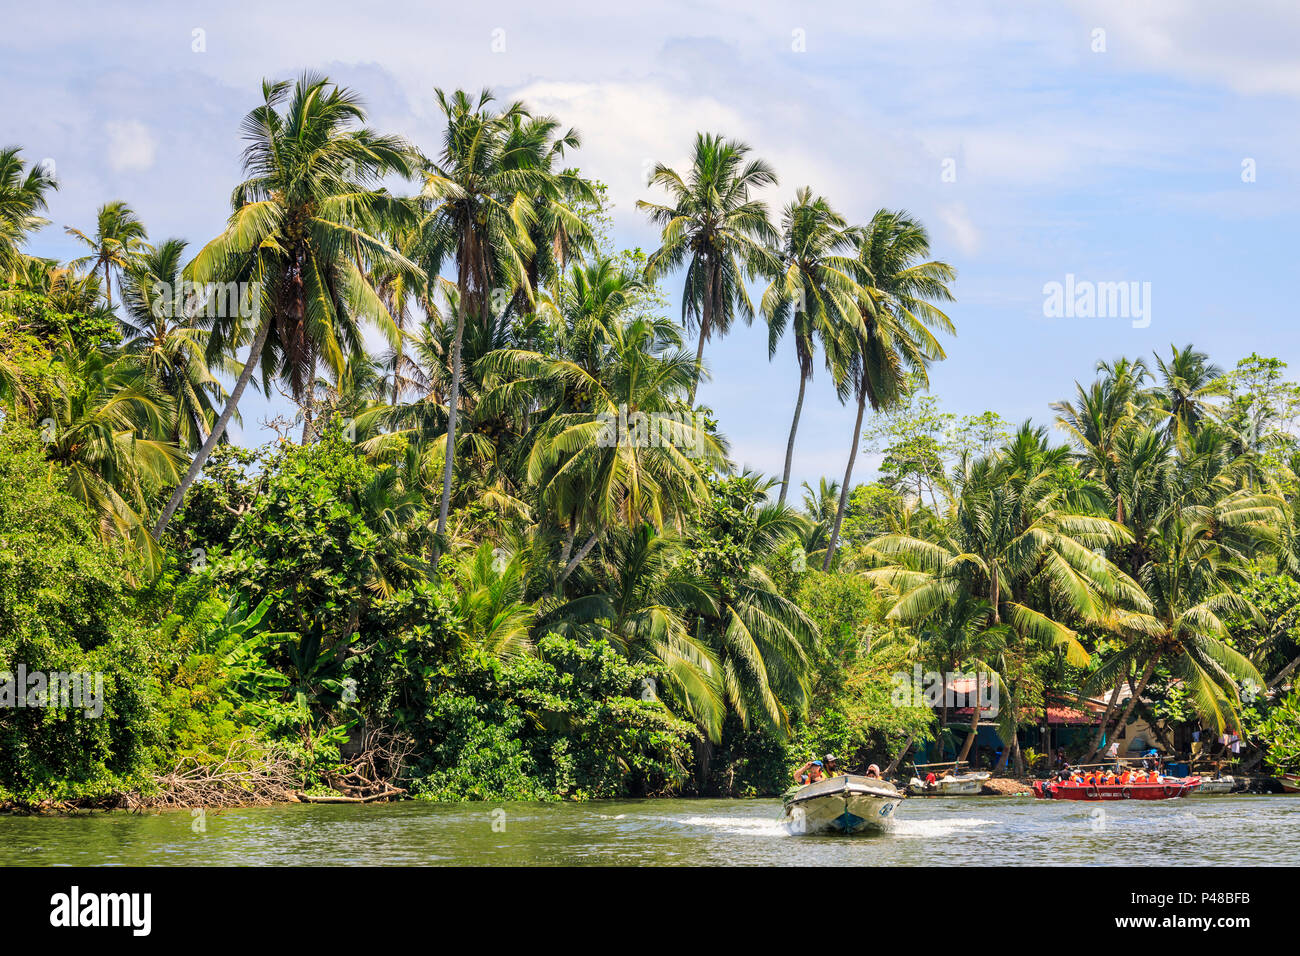 Speedboat velocizzando e turisti a bordo di una barca in un lussureggiante paesaggio tropicale e palme sul fiume Madu, Madu Ganga zone umide, sud-occidentale dello Sri Lanka Foto Stock